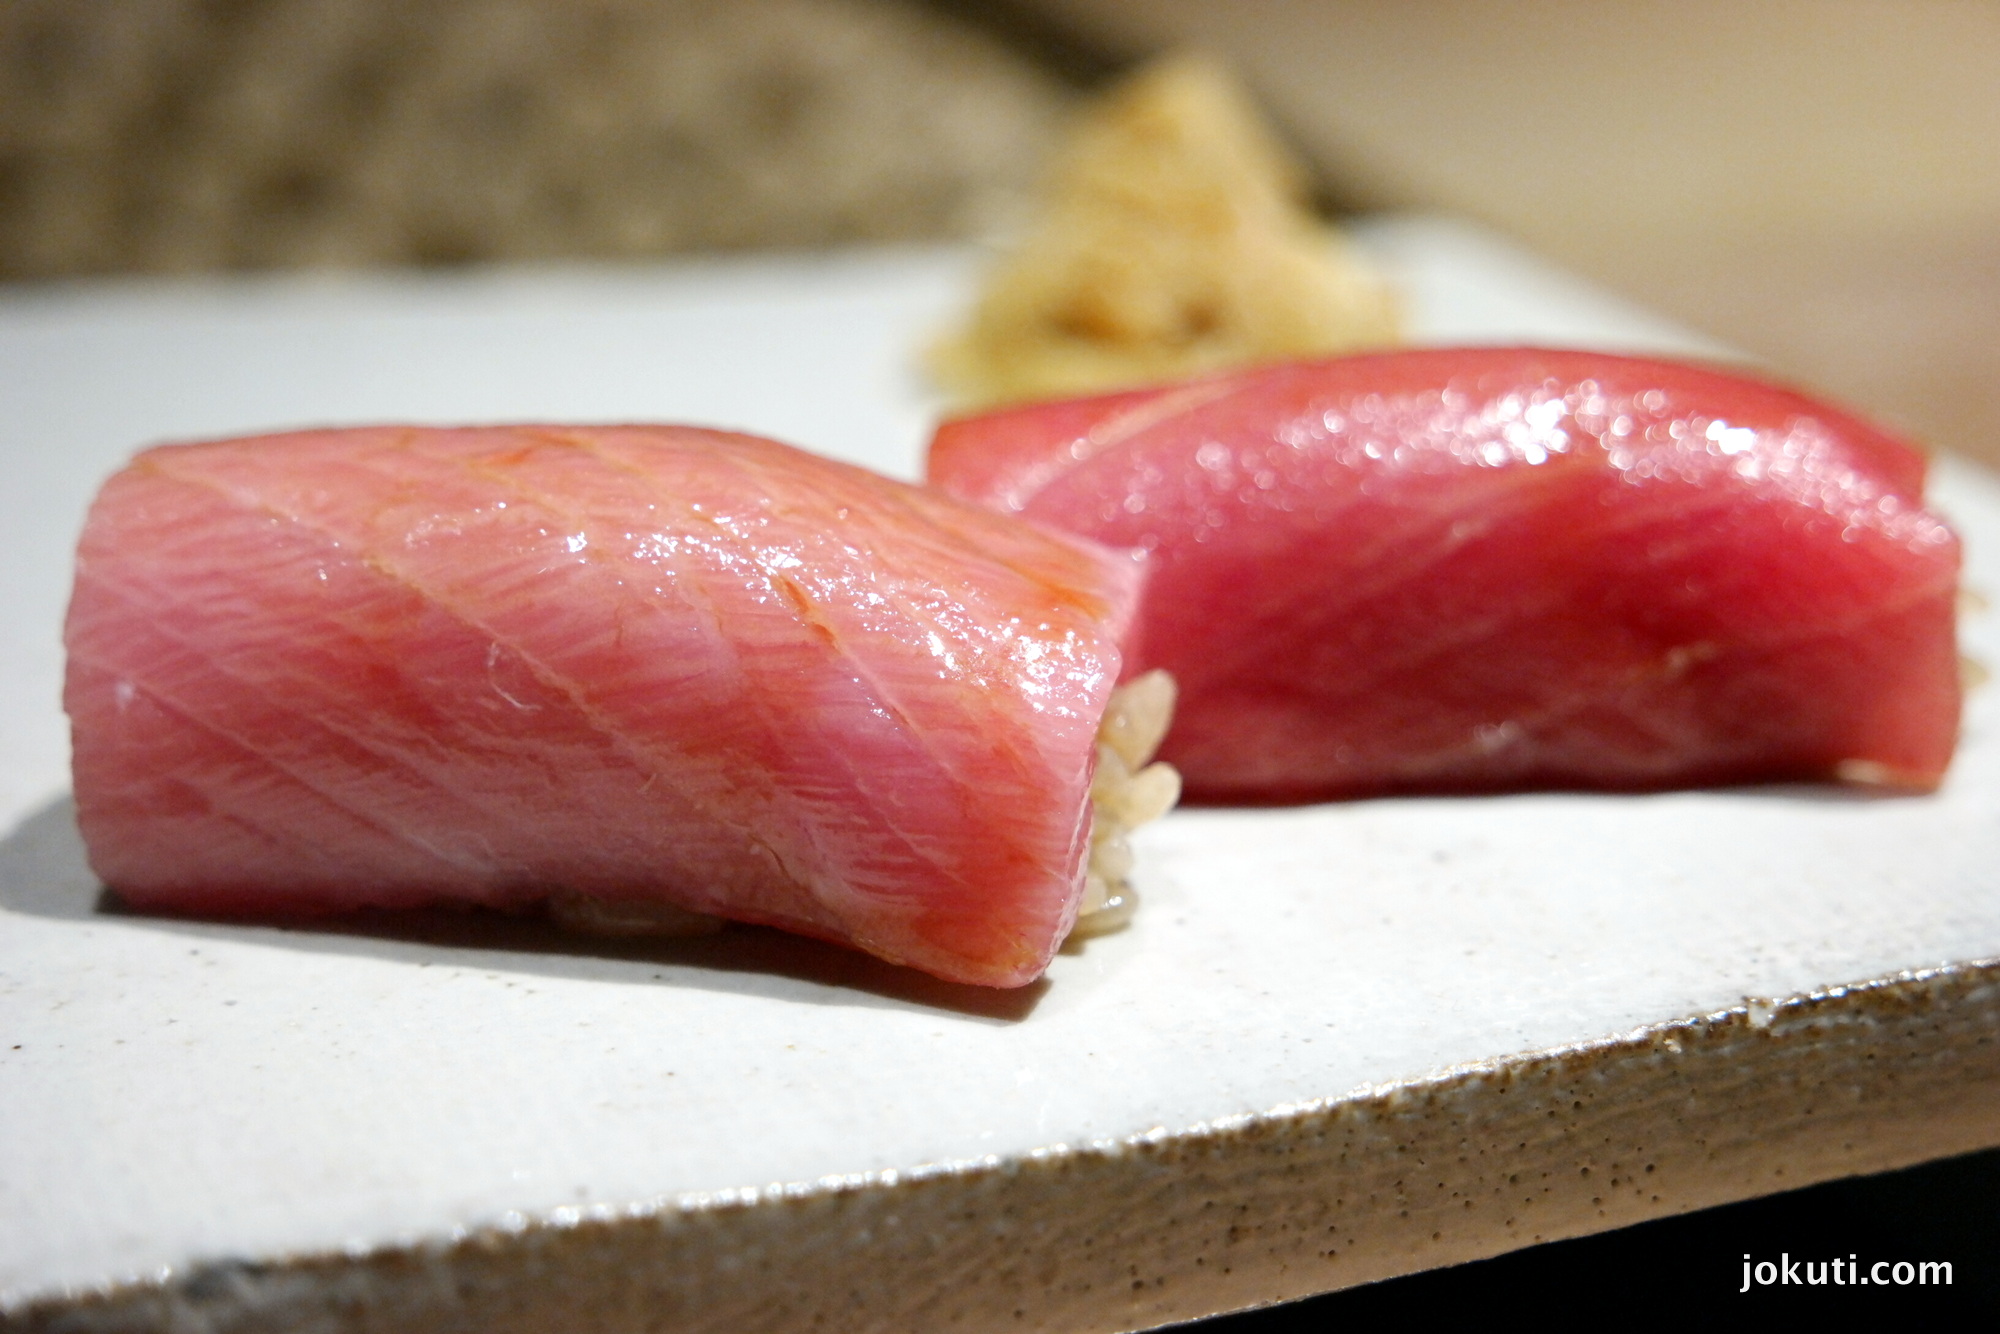 Kék úszójú tonhal toro része, natúr, illetve szójaszószban marinálva